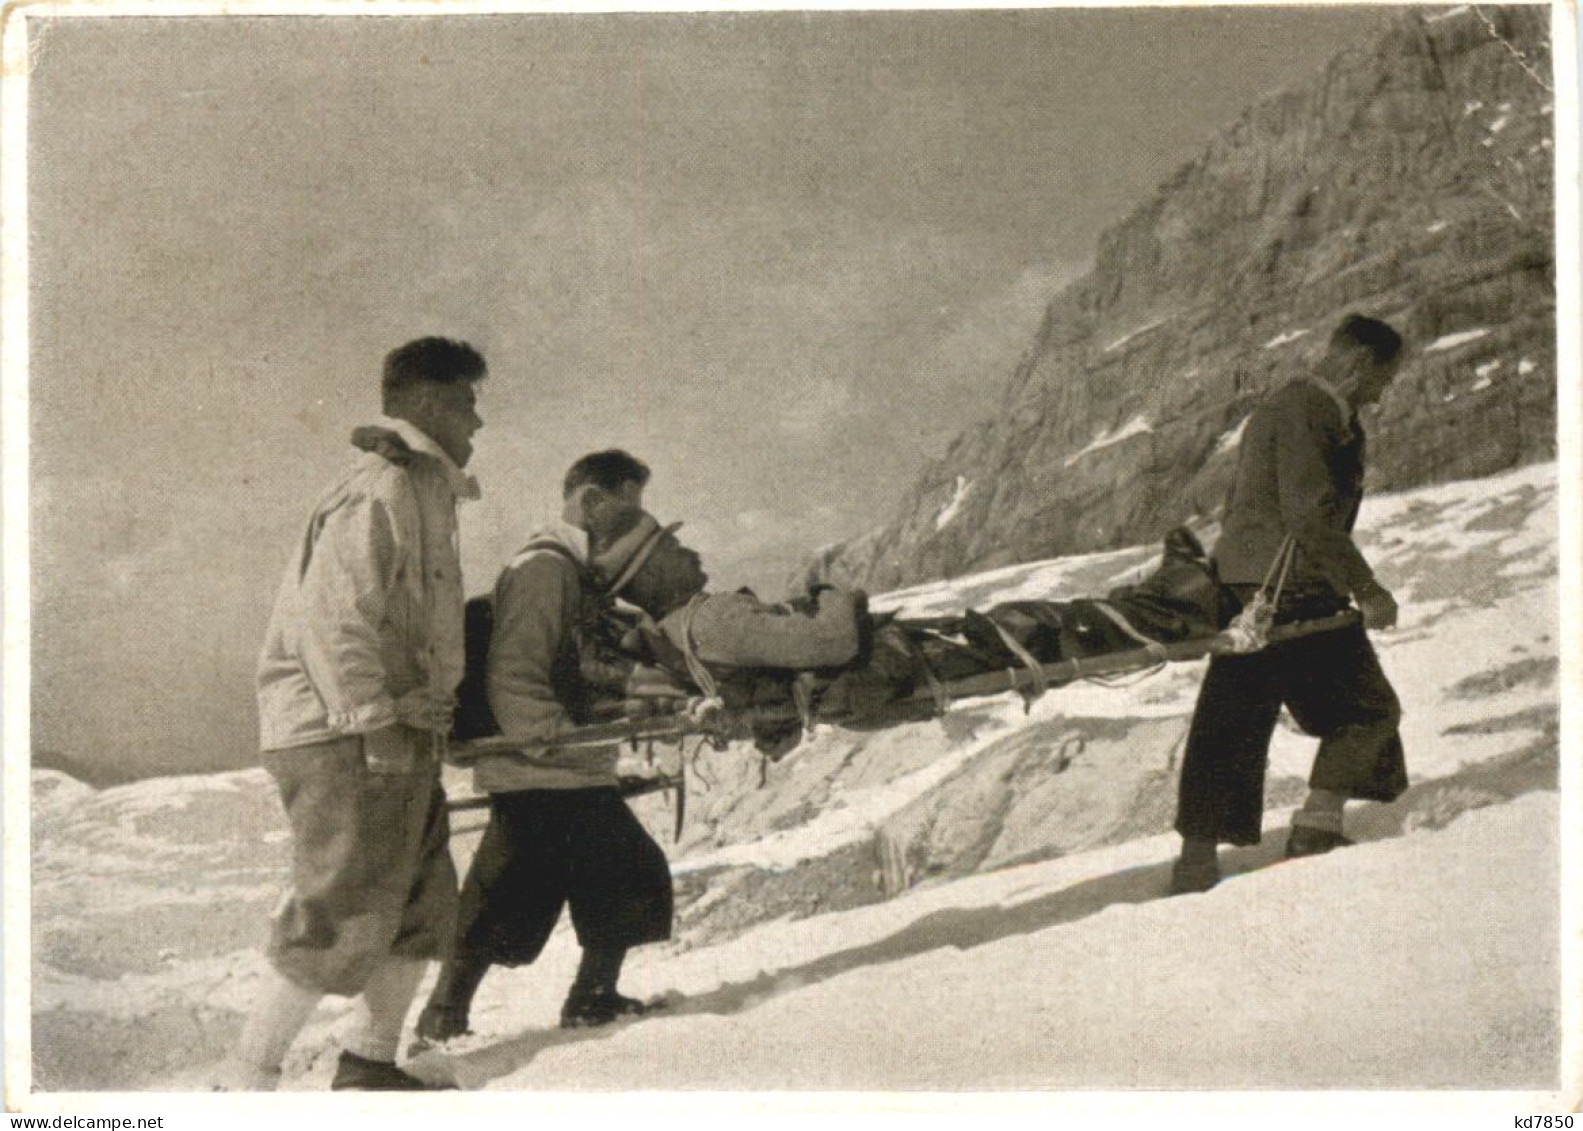 Deutsche Bergwacht - Mountaineering, Alpinism